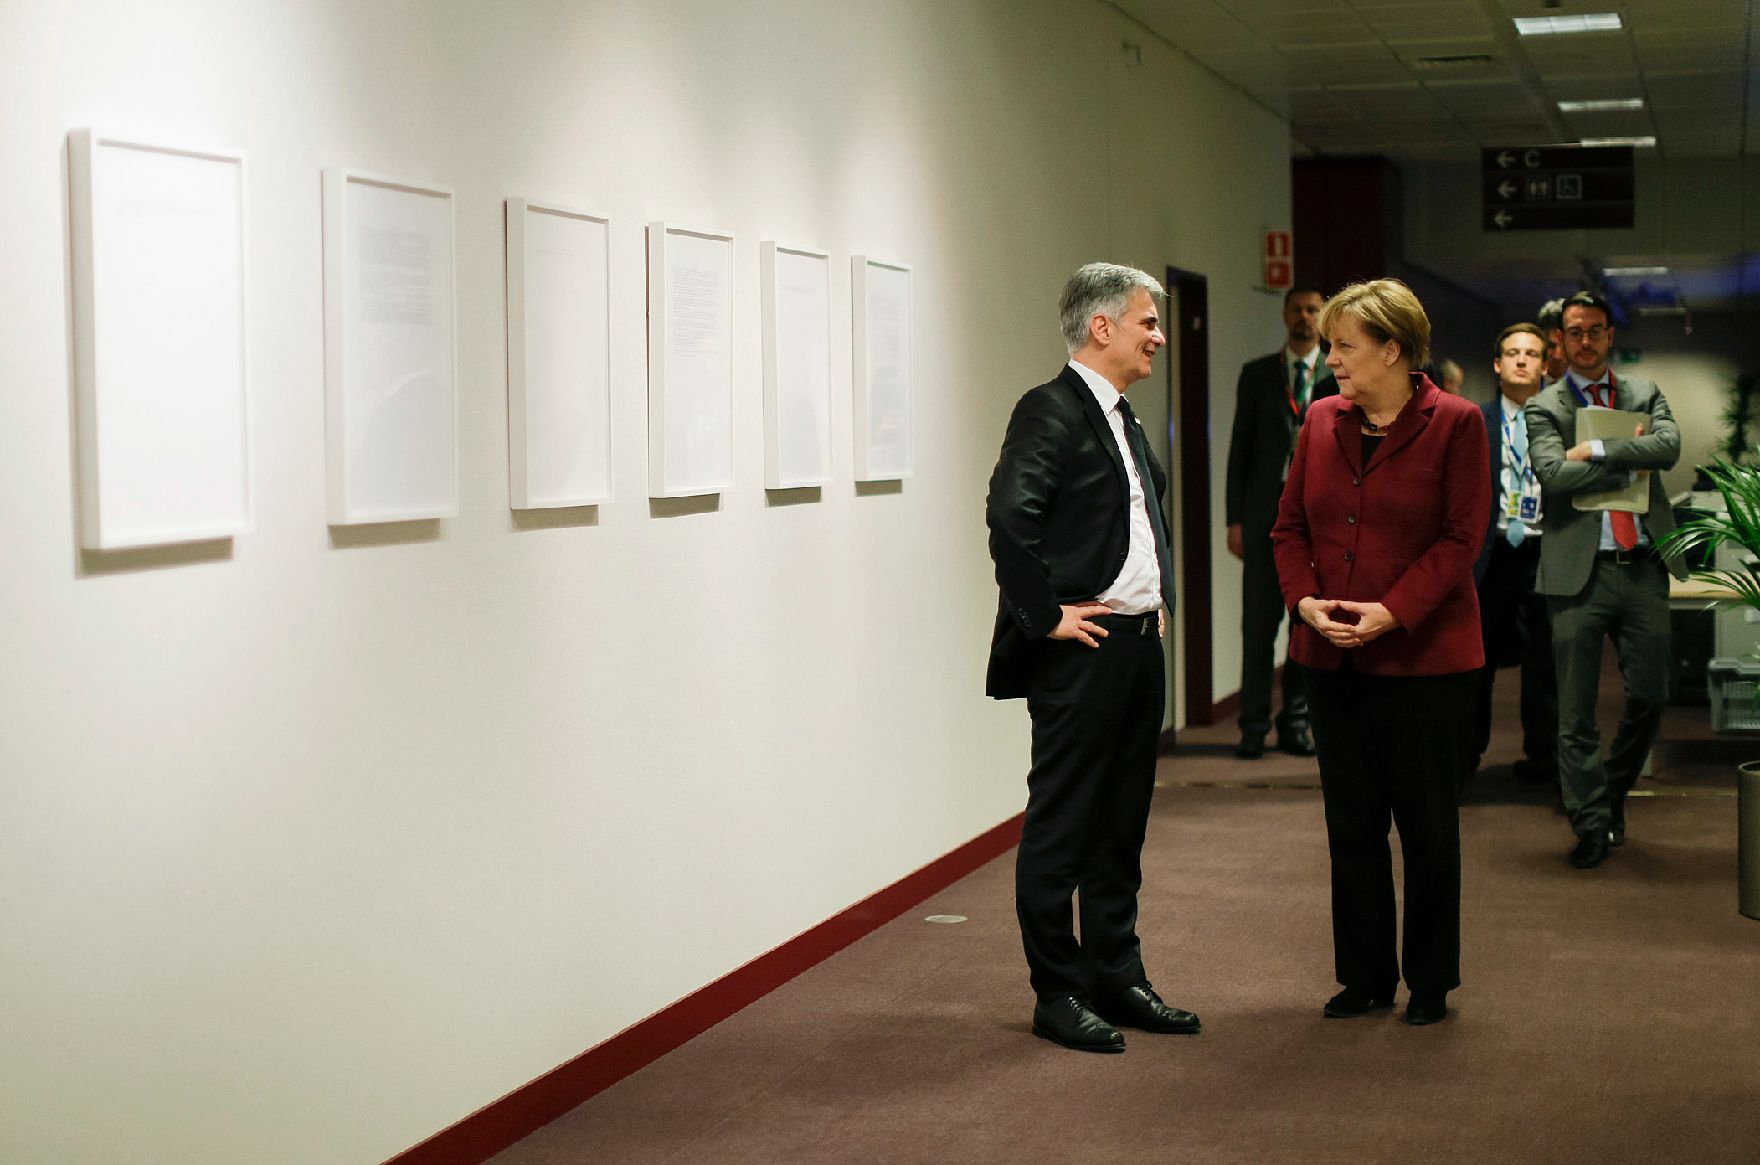 Am 29. November 2015 fand in Brüssel der Sondergipfel der Staats- und Regierungschefs statt. Im Bild Bundeskanzler Werner Faymann (l.) mit der deutschen Bundeskanzlerin Angela Merkel (r.).